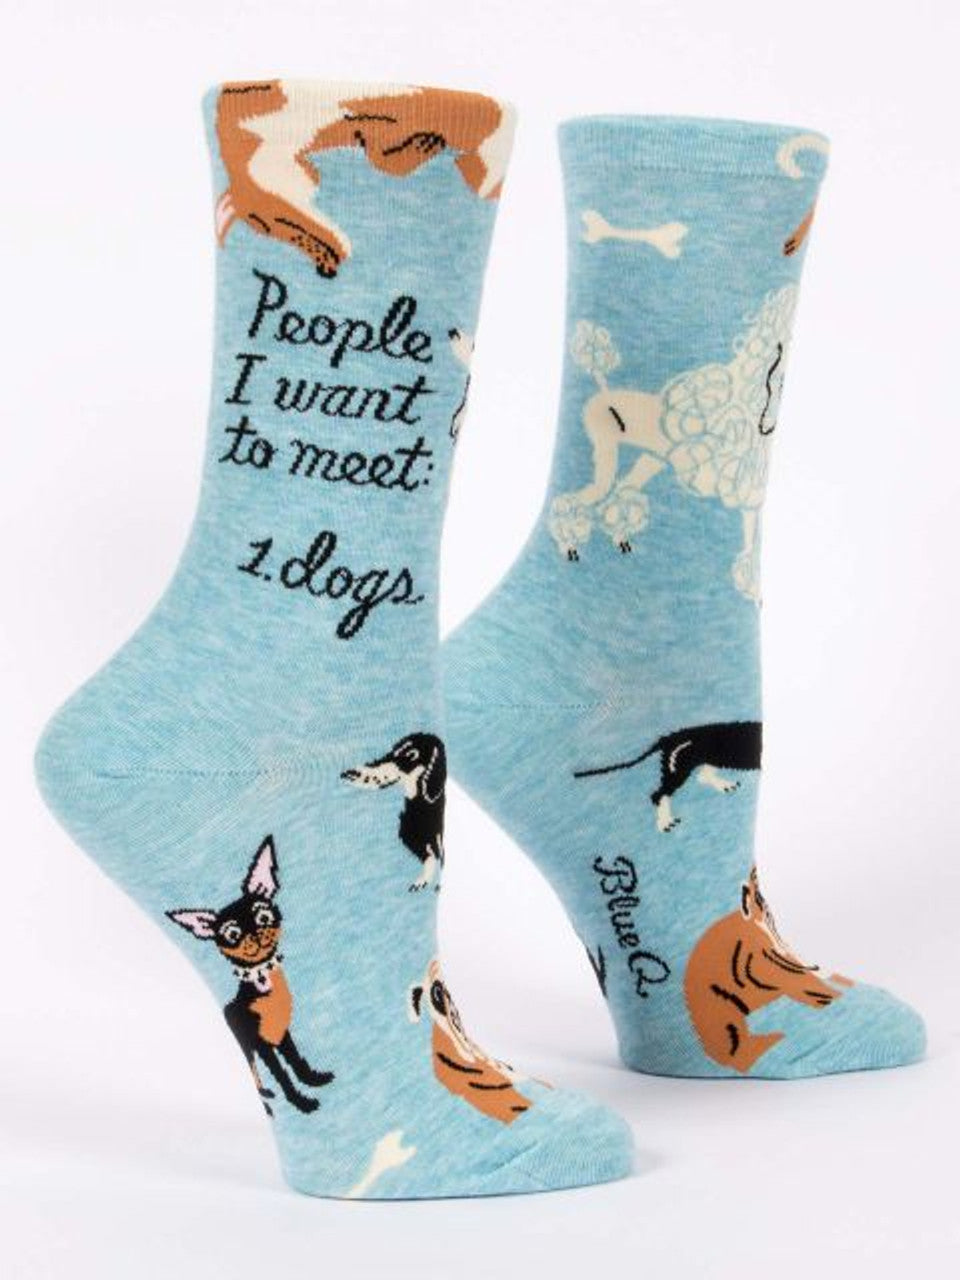 People I Want To Meet: Dogs Socks - Women's Socks